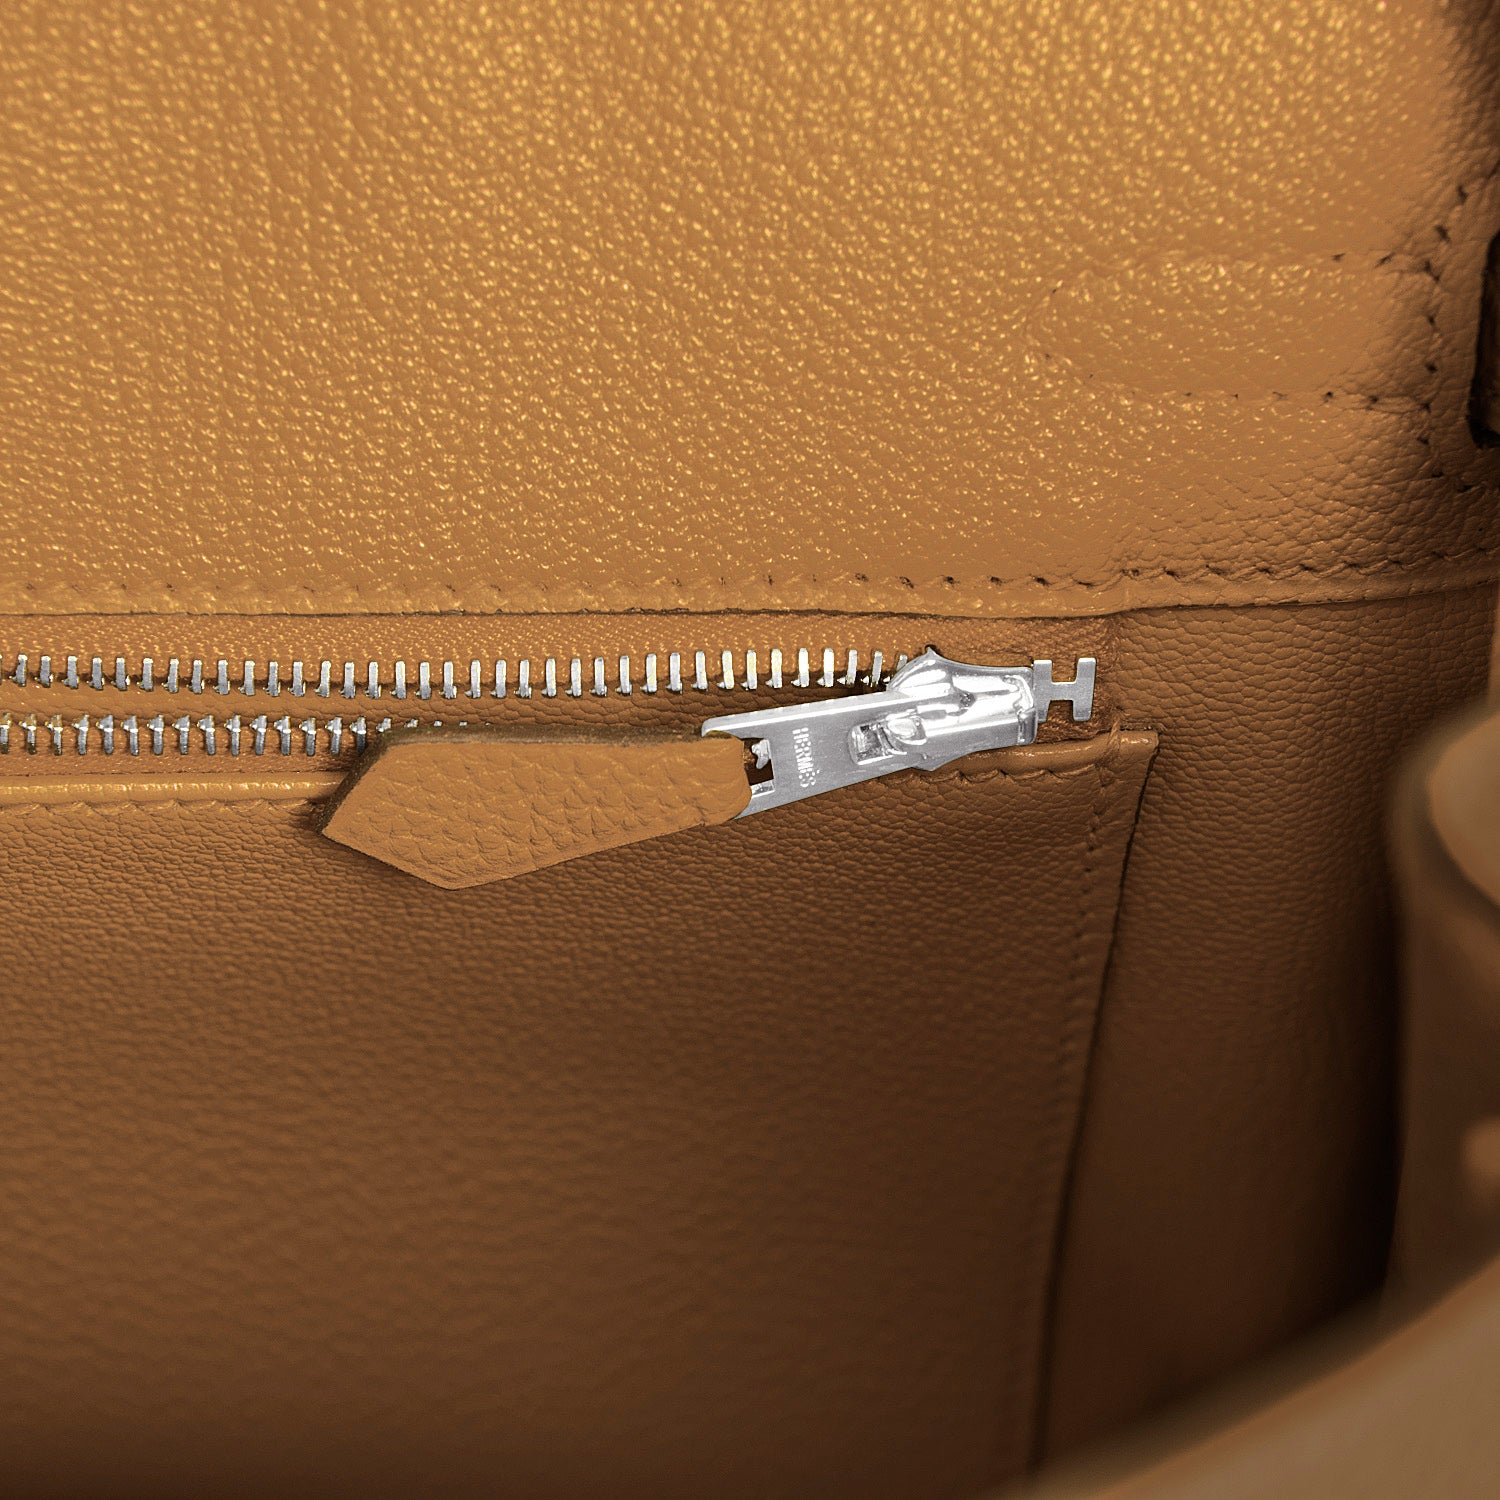 Hermès Birkin 25 Bronze Dore Togo with Gold Hardware - Bags